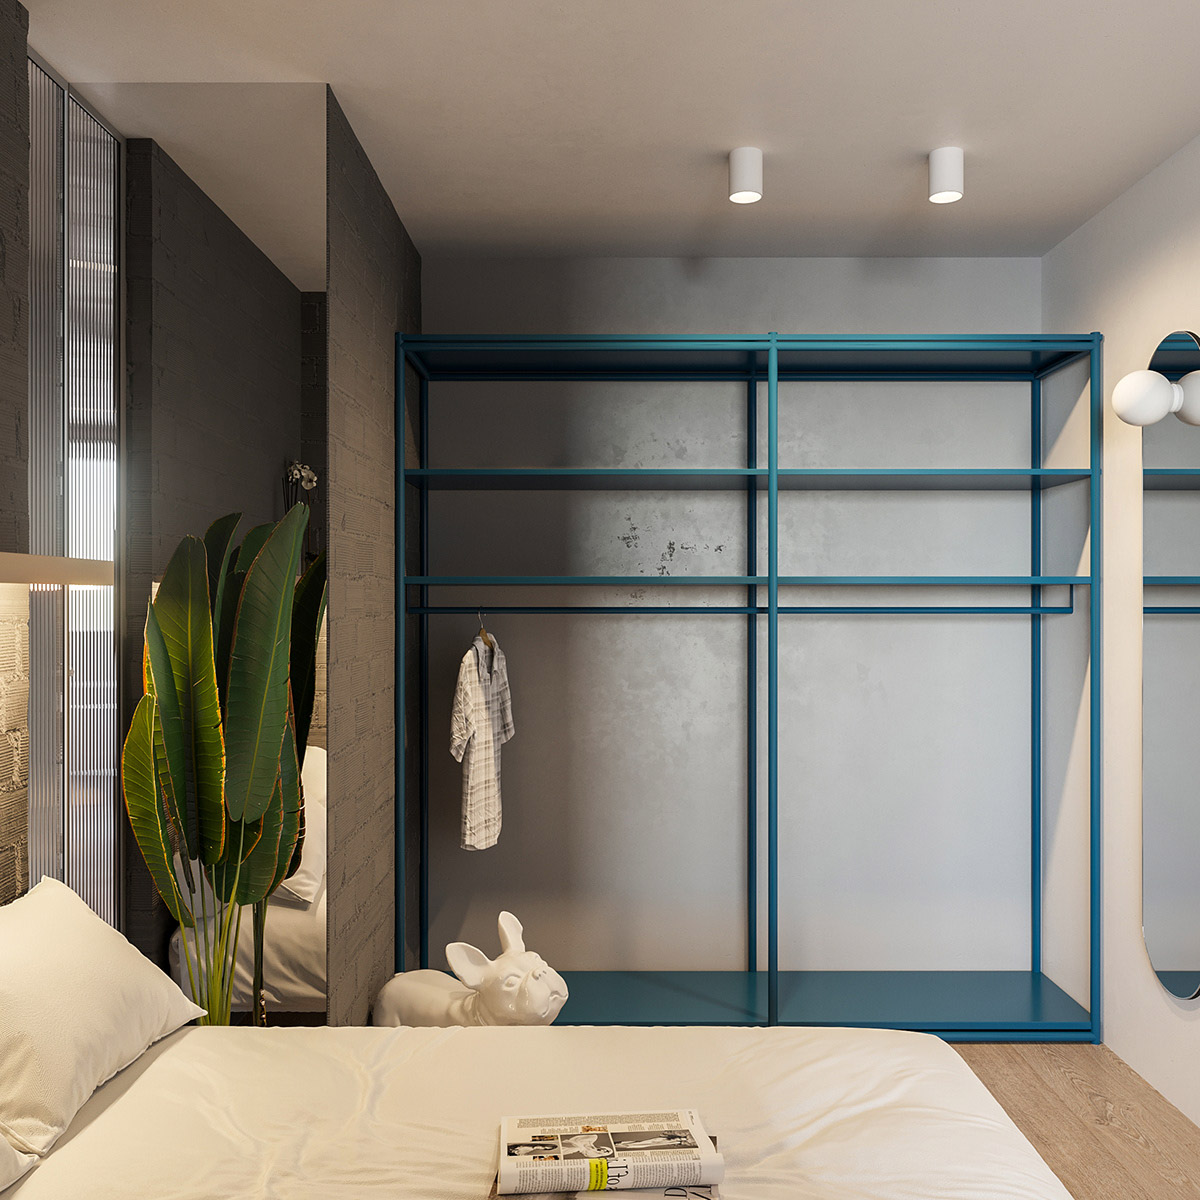 Phòng ngủ nhỏ màu xám sáng với điểm nhấn sinh động là chậu cảnh xanh tốt.